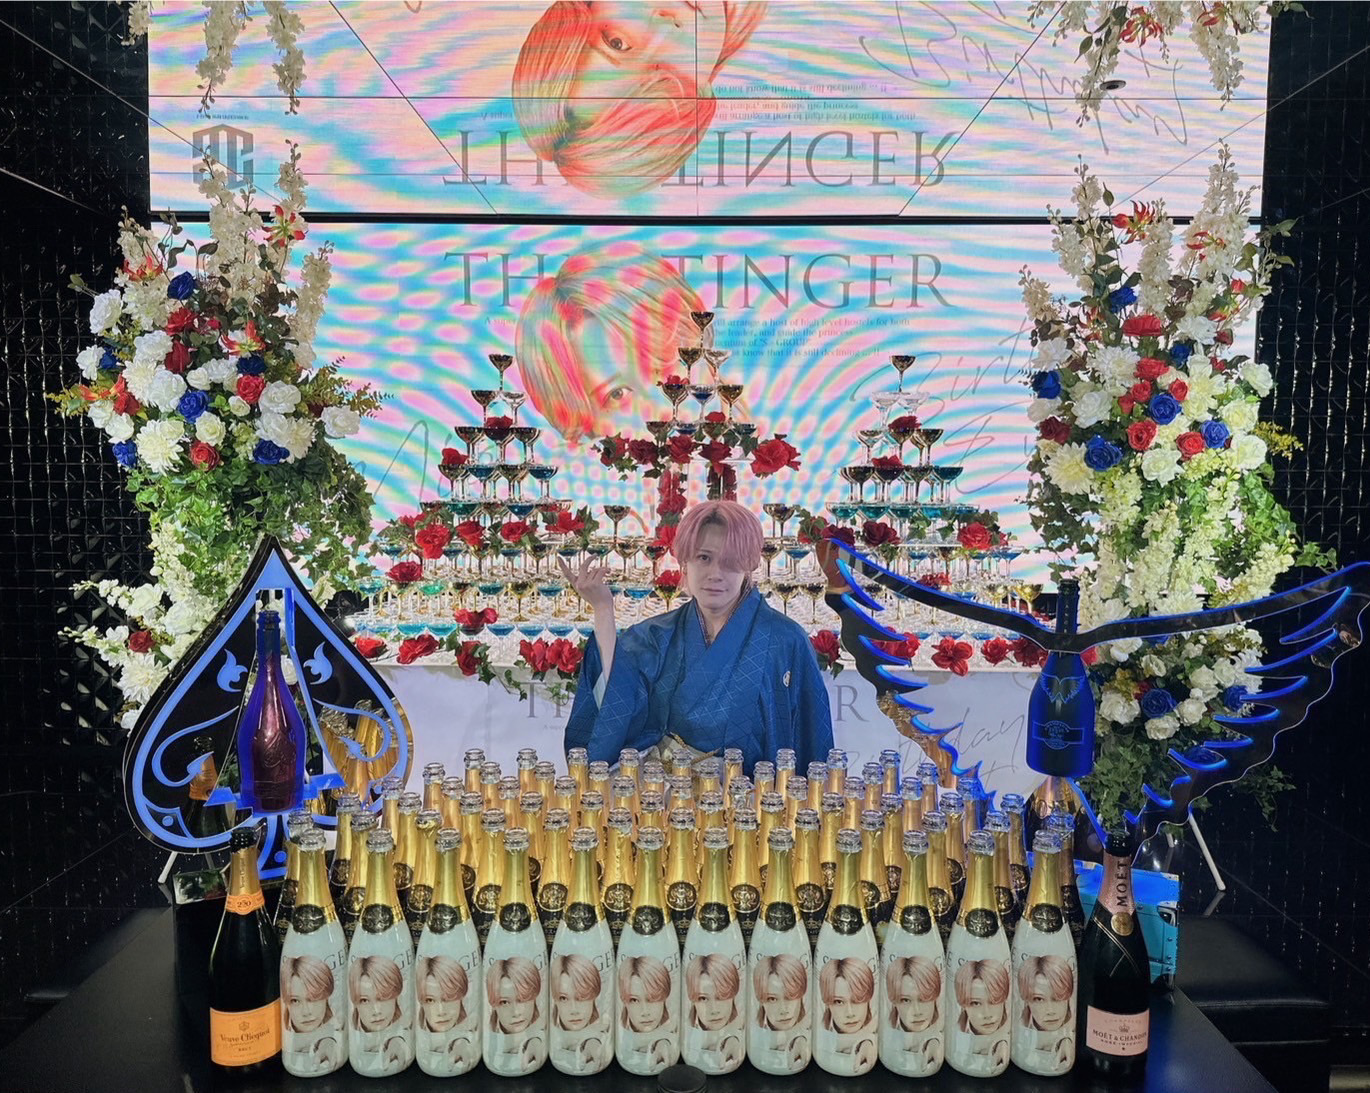 高級シャンパンタワーに、たくさんのお祝いのシャンパンを頂きました✨
皆から愛される素晴らしい一日となりました☆